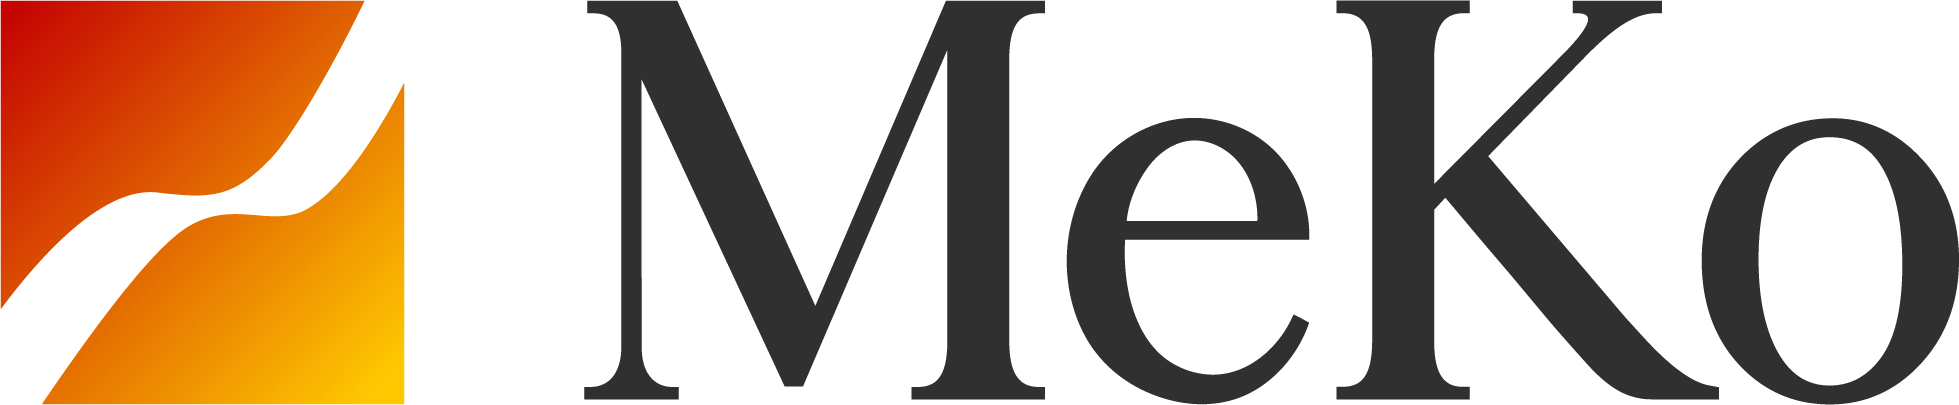 logo MeKo Distributor - Nhà phân phối phụ kiện cao cấp hàng đầu Việt Nam